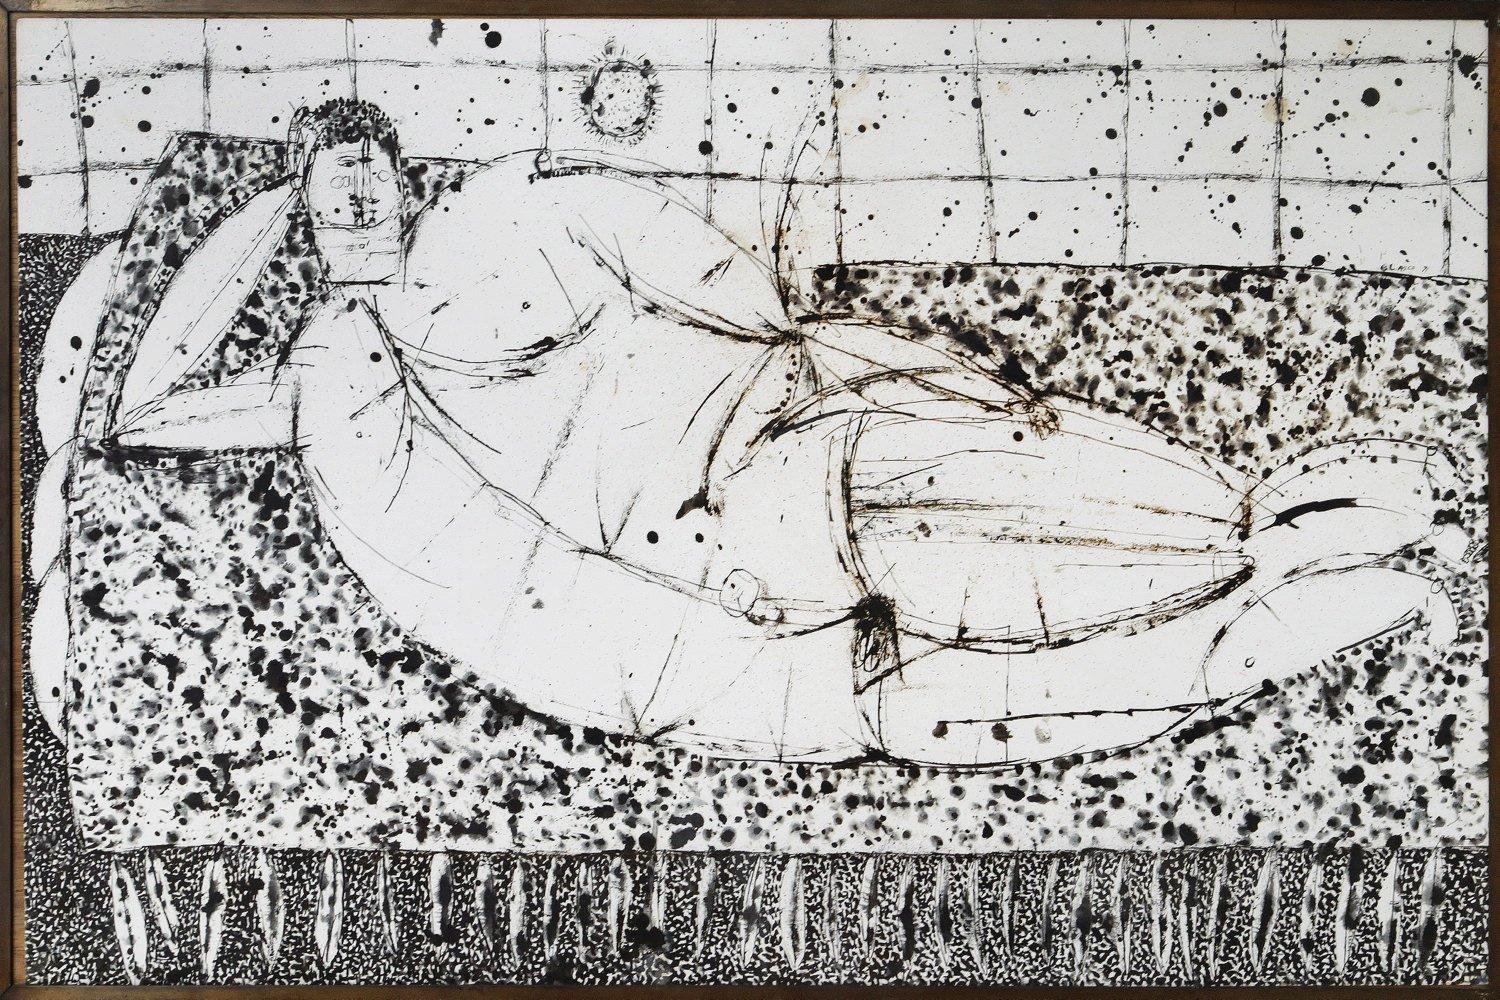 Joseph Glasco (Américain, 1925-1996)
Figure allongée, tournée vers la droite (Nikos)
1971
Encre de Chine sur papier
Signé et daté au milieu à droite
26 x 38.25 pouces

Joseph Glasco est né à Paul's Valley, en Oklahoma, et a grandi au Texas. En 1949,